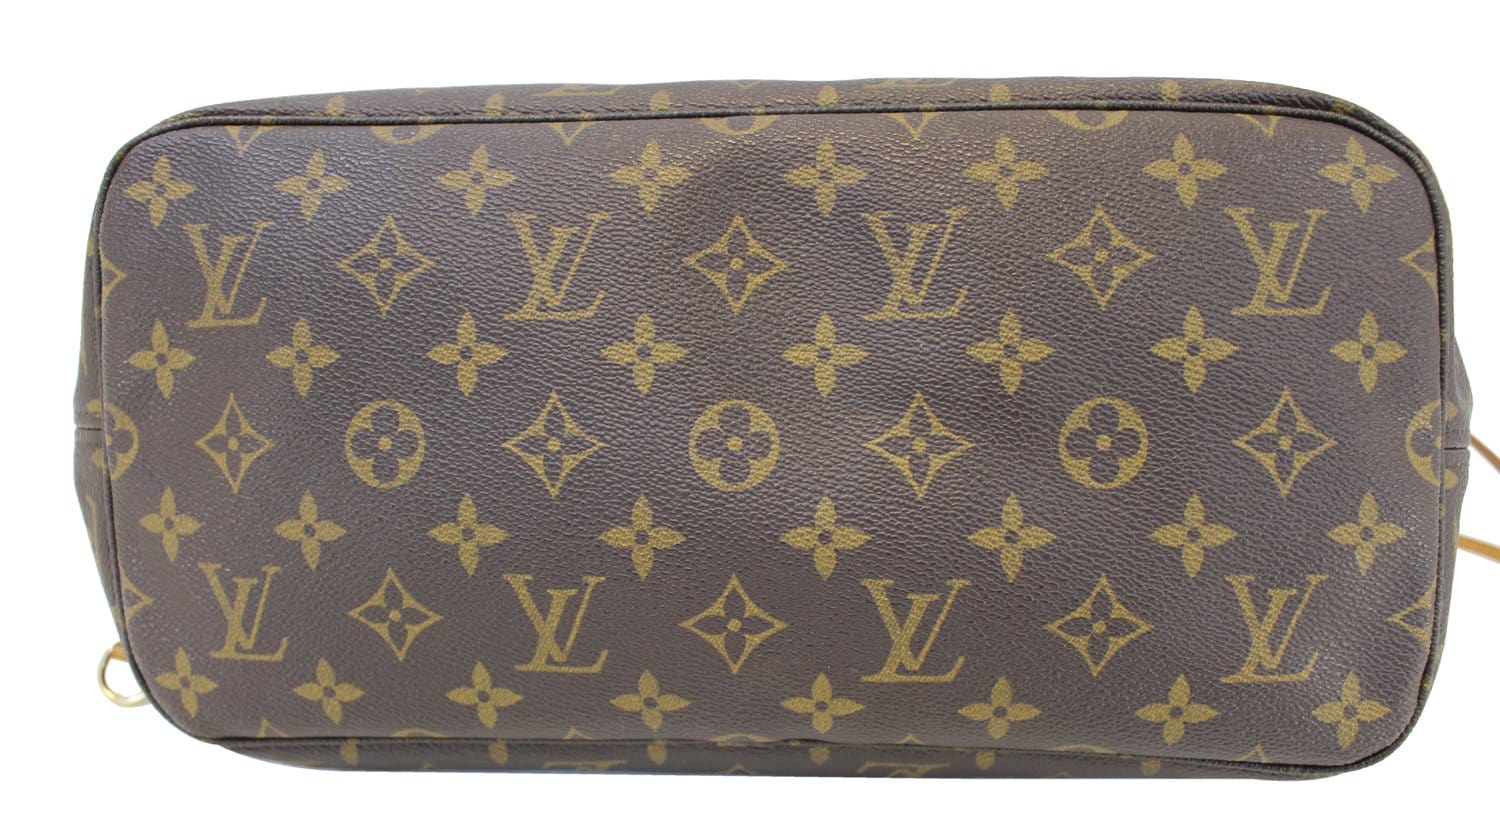 Louis Vuitton M41177 Neverfull Mm Shoulder Bag Monogram Canvas